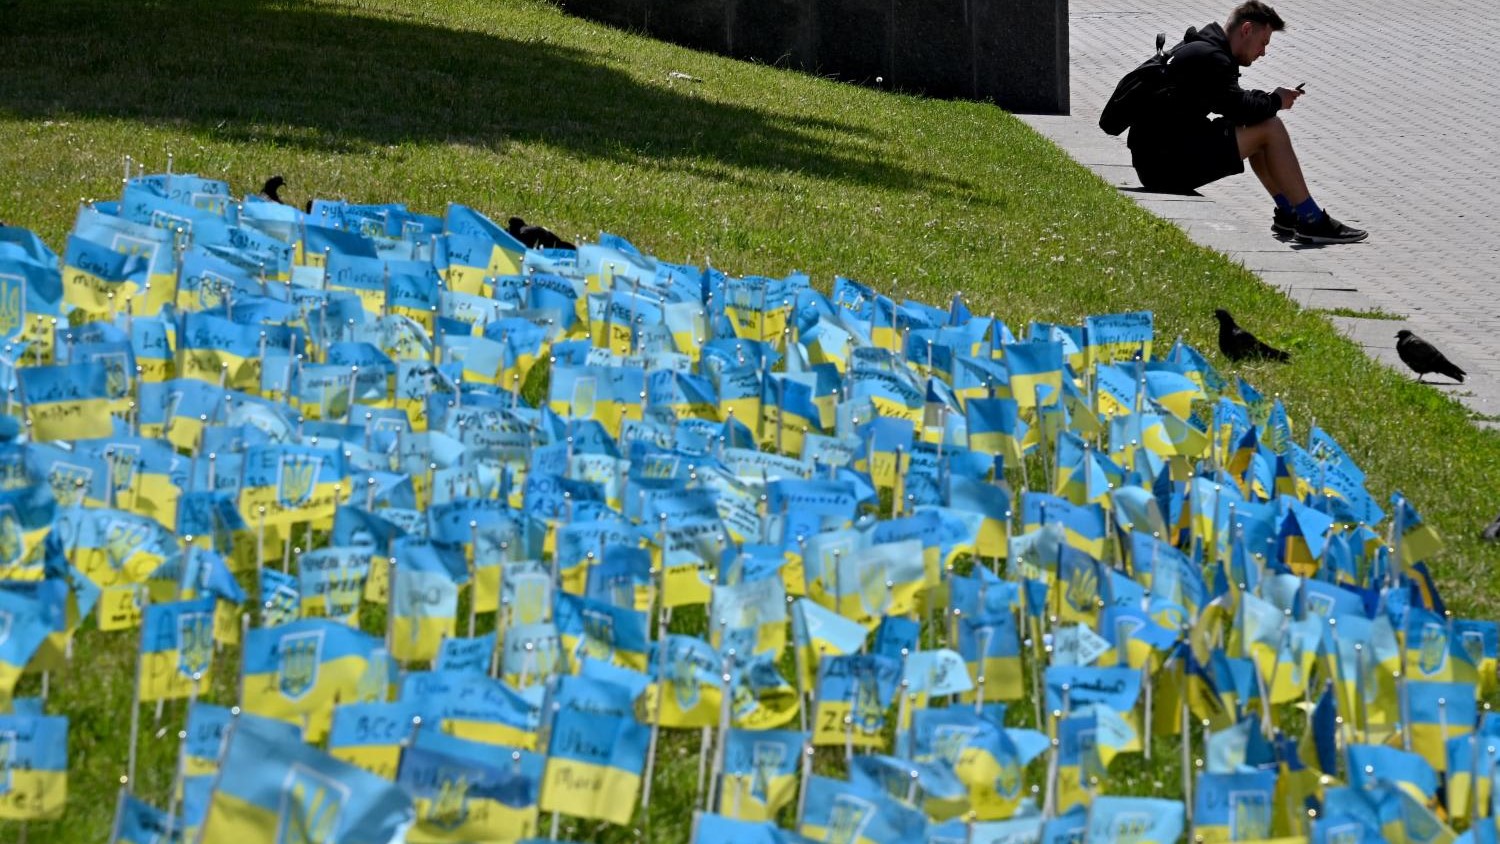 قطعة أرض عشبية مزينة بأعلام أوكرانية صغيرة موقعة بأسماء الجنود الأوكرانيين الذين قتلوا في الحرب مع روسيا ، في وسط العاصمة الأوكرانية كييف في 22 يونيو 2022